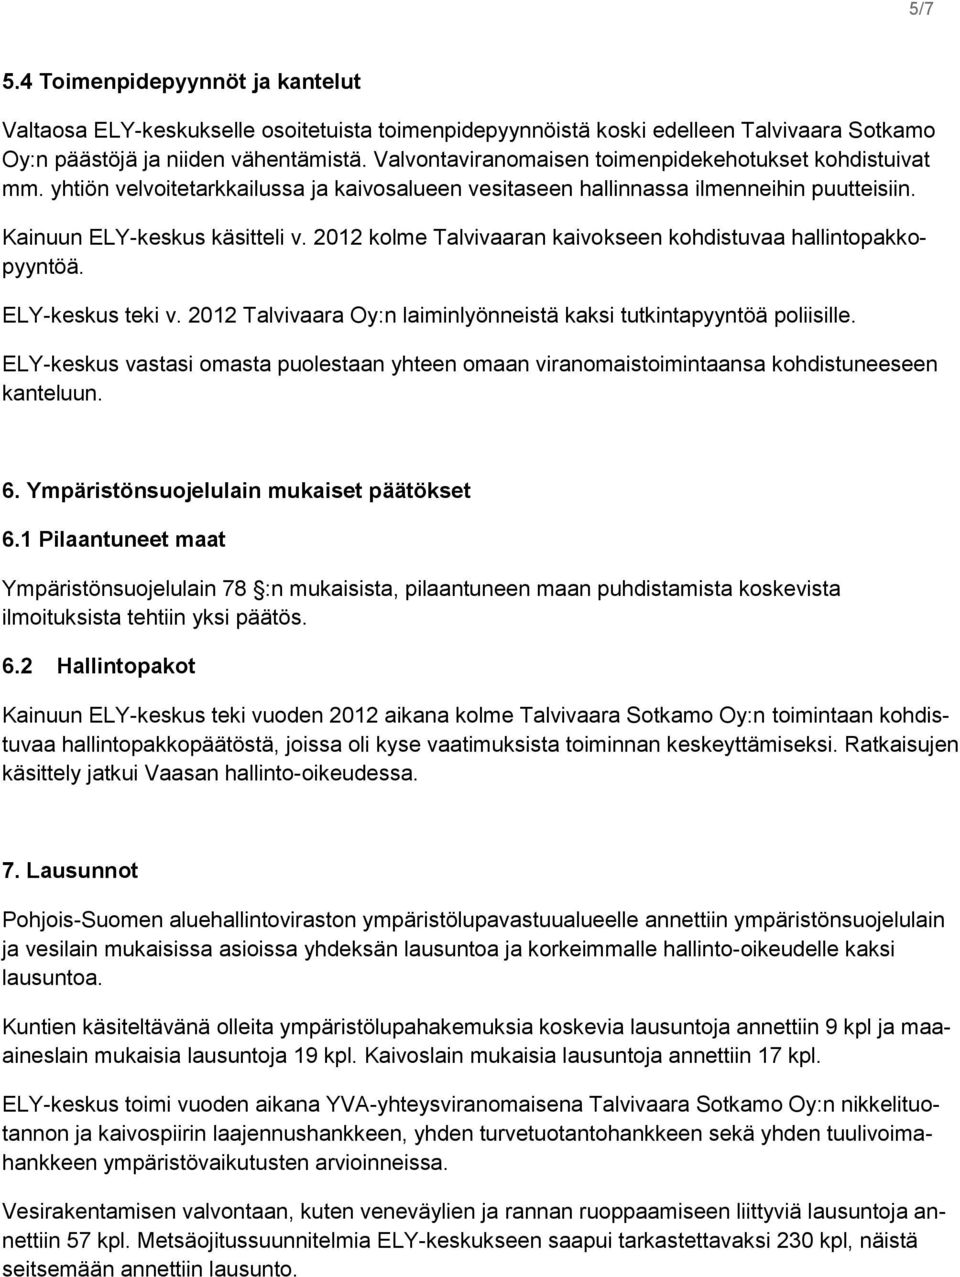 2012 kolme Talvivaaran kaivokseen kohdistuvaa hallintopakkopyyntöä. ELY-keskus teki v. 2012 Talvivaara Oy:n laiminlyönneistä kaksi tutkintapyyntöä poliisille.